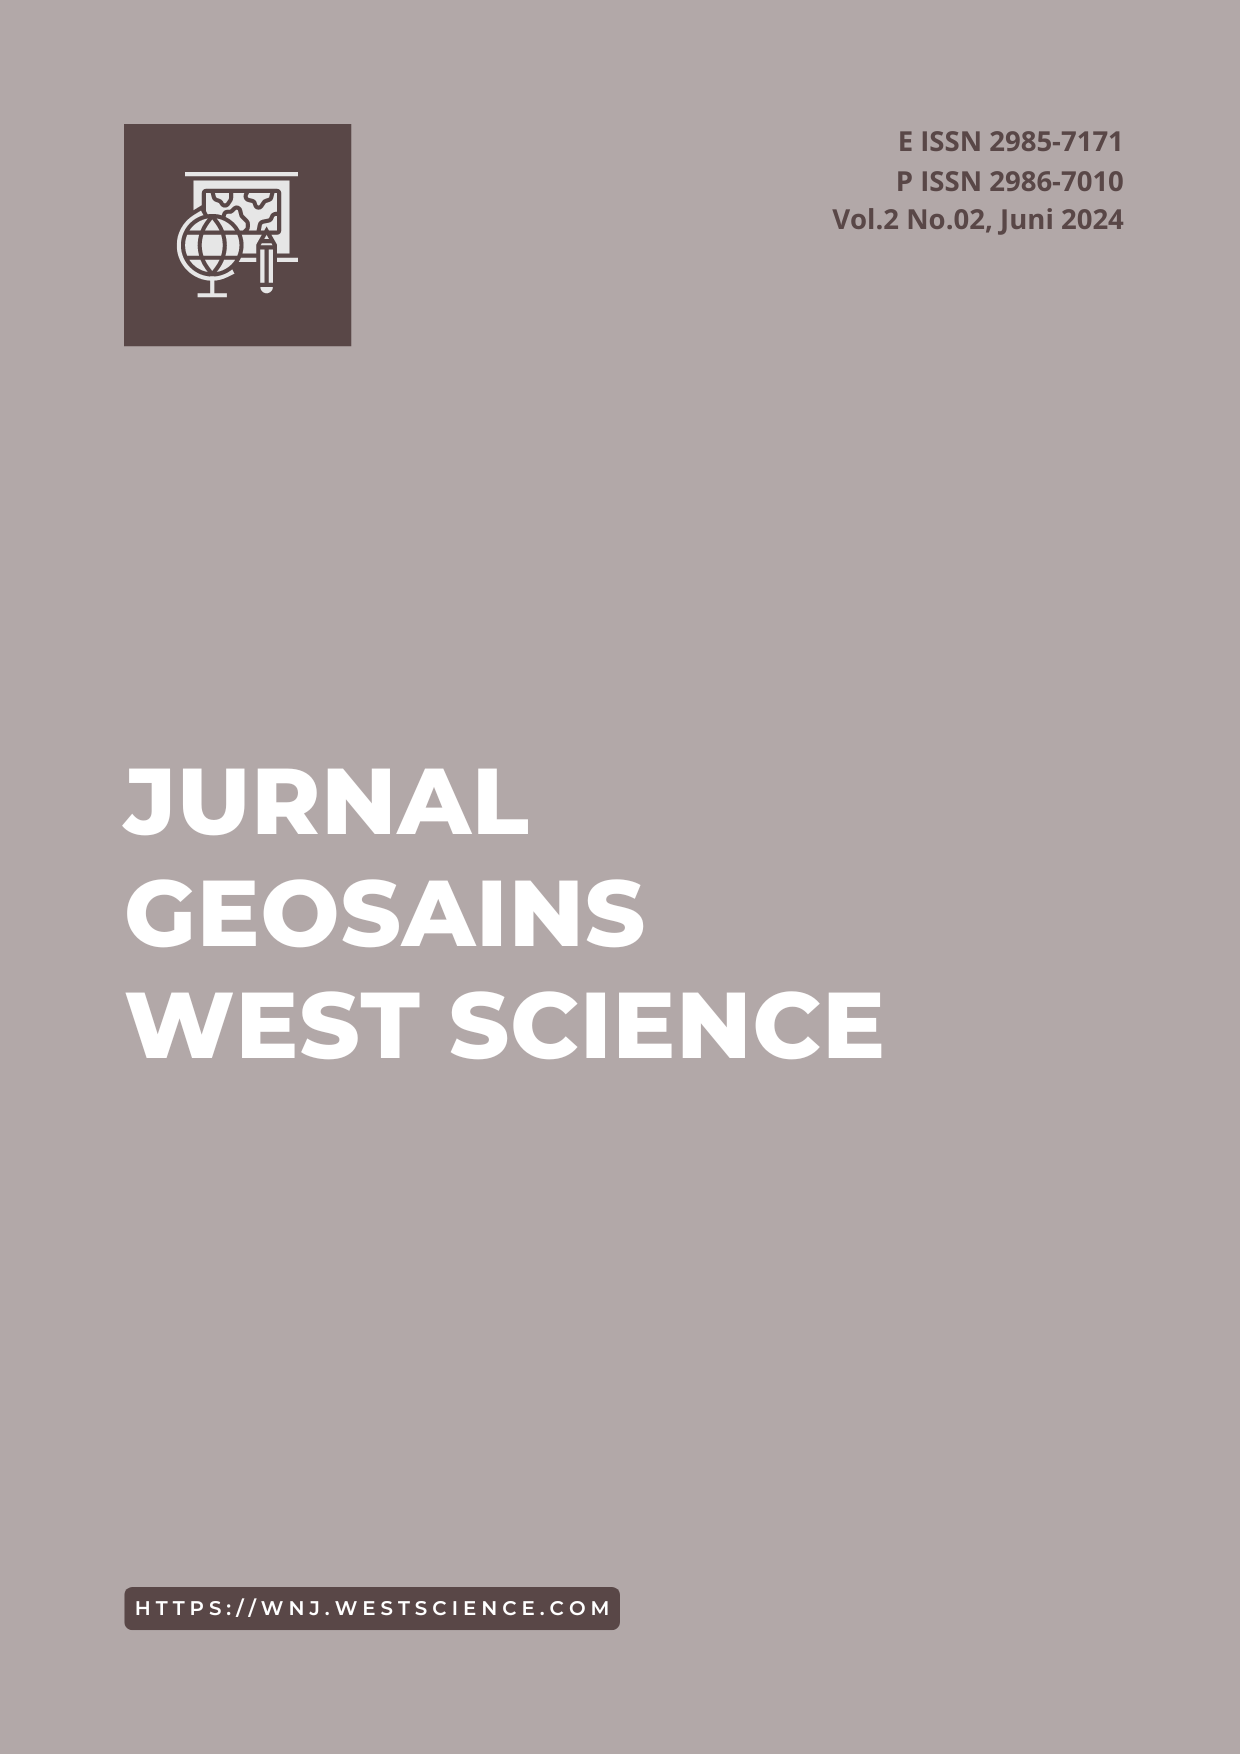 					Lihat Vol 2 No 02 (2024): Jurnal Geosains West Science
				